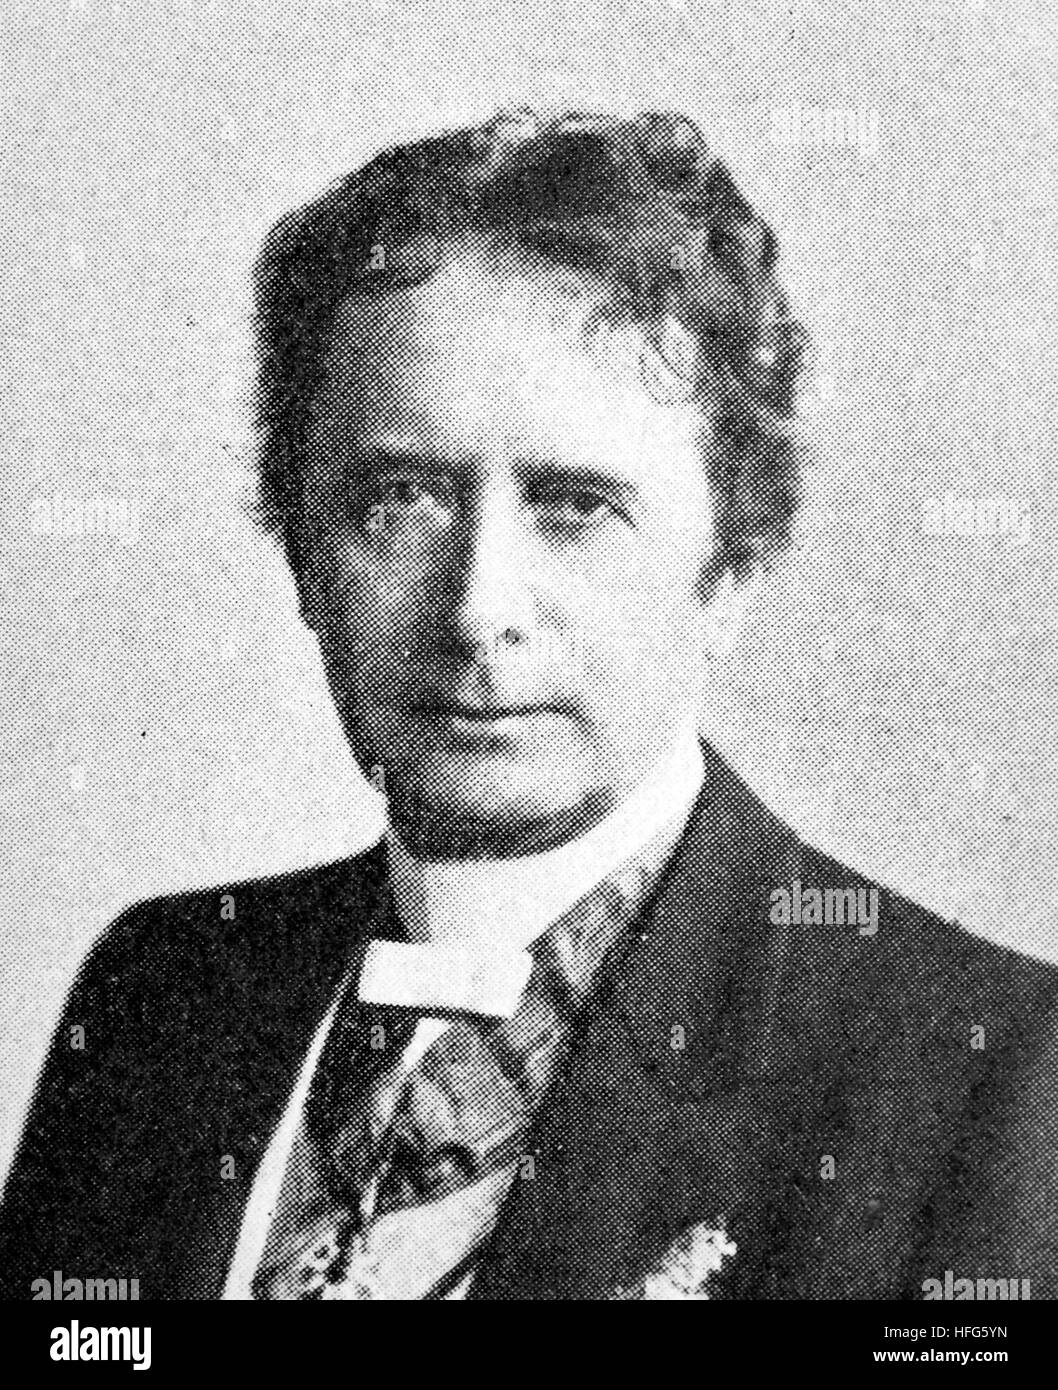 Friedrich Haase wurde 1827-1911, ein prominenter deutscher Schauspieler und Theaterregisseur, Reproduktion Foto aus dem Jahr 1895, digital verbessert Stockfoto